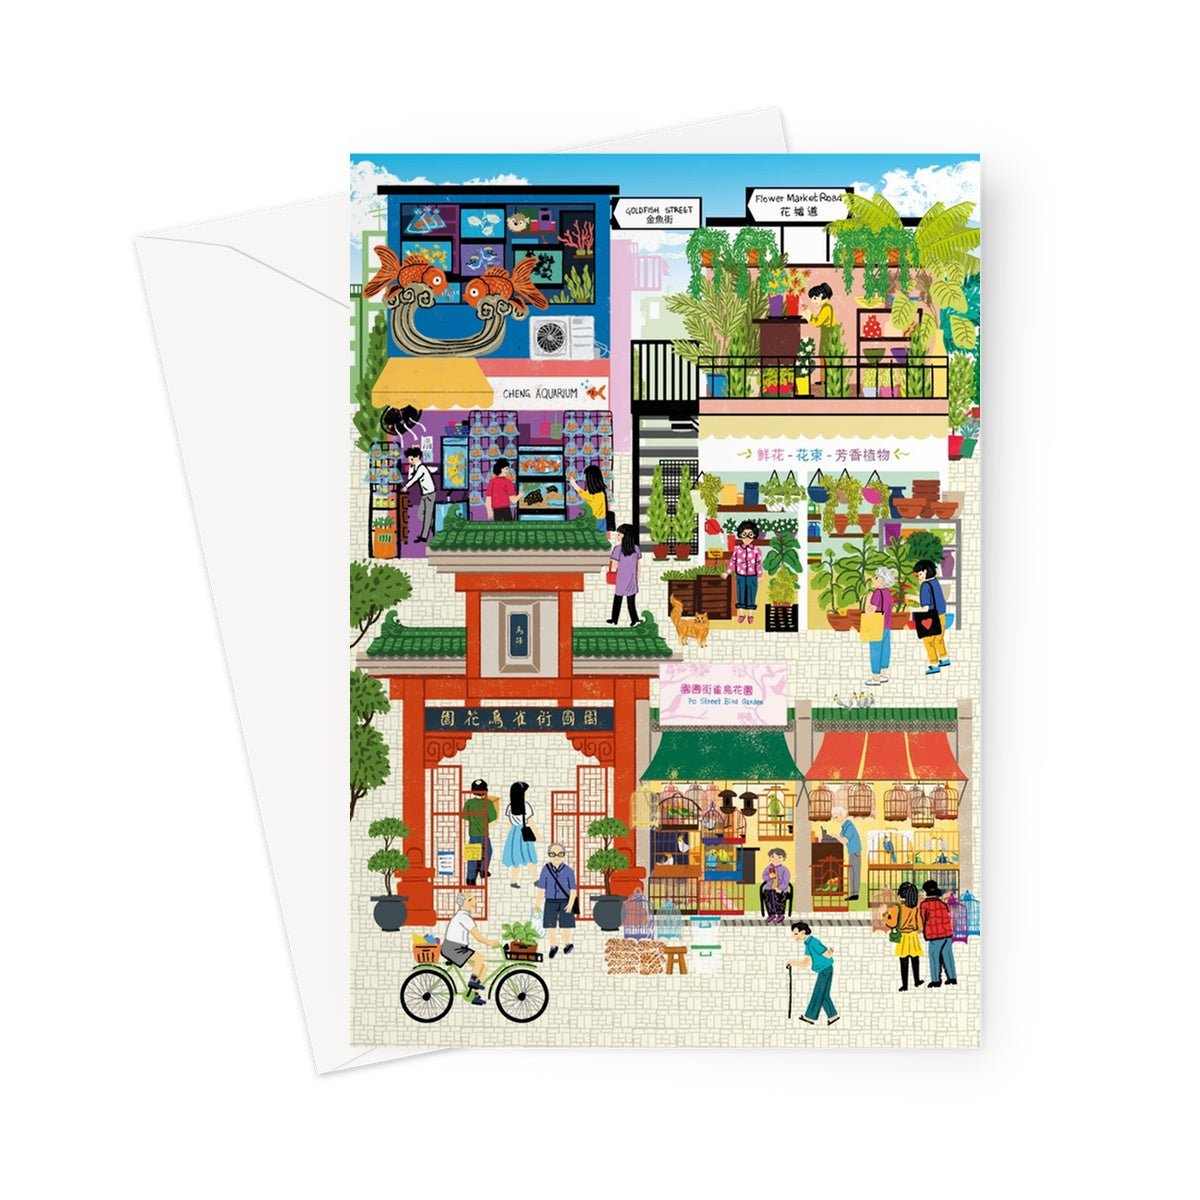 Fantasy Cityscapes - Hong Kong Markets Greeting Card